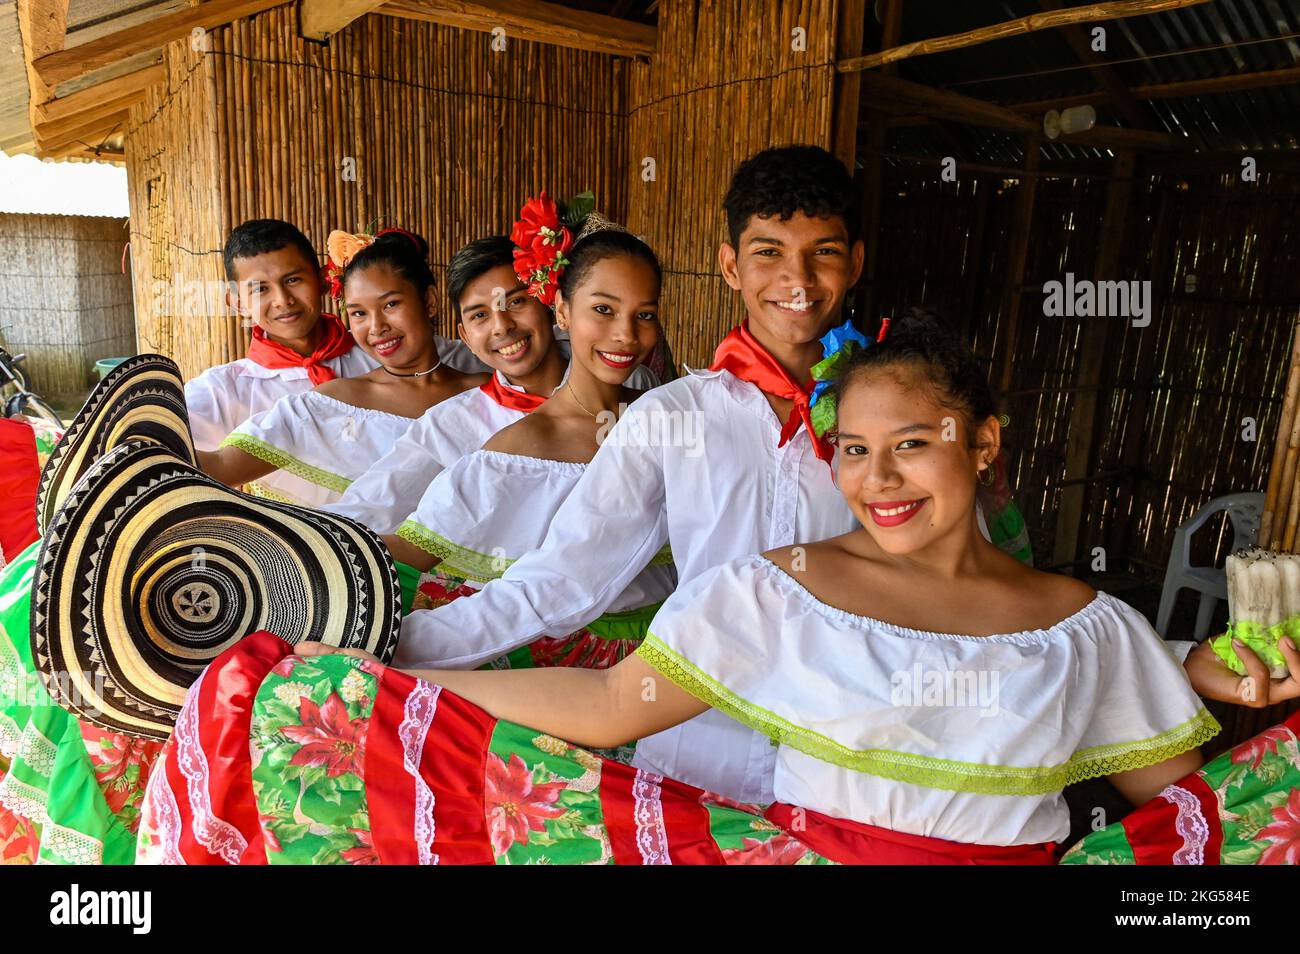 Die Cumbia ist ein Folklore-Genre und Tanz. Es ist eine Mischung aus afrikanischen, indianischen und europäischen Stilen und verwendet Musikinstrumente wie Trommeln, Flöten, Maracas und Akkordeons. Kolumbianische Cumbia, ist ein musikalischer Rhythmus und traditioneller Volkstanz aus Kolumbien. Es besteht aus drei verschiedenen Kulturen, der amerikanischen Indianer, Afrikaner und Spanier, die das Ergebnis der langen und intensiven Begegnung dieser Kulturen während der Eroberung und der Kolonie sind. Stockfoto